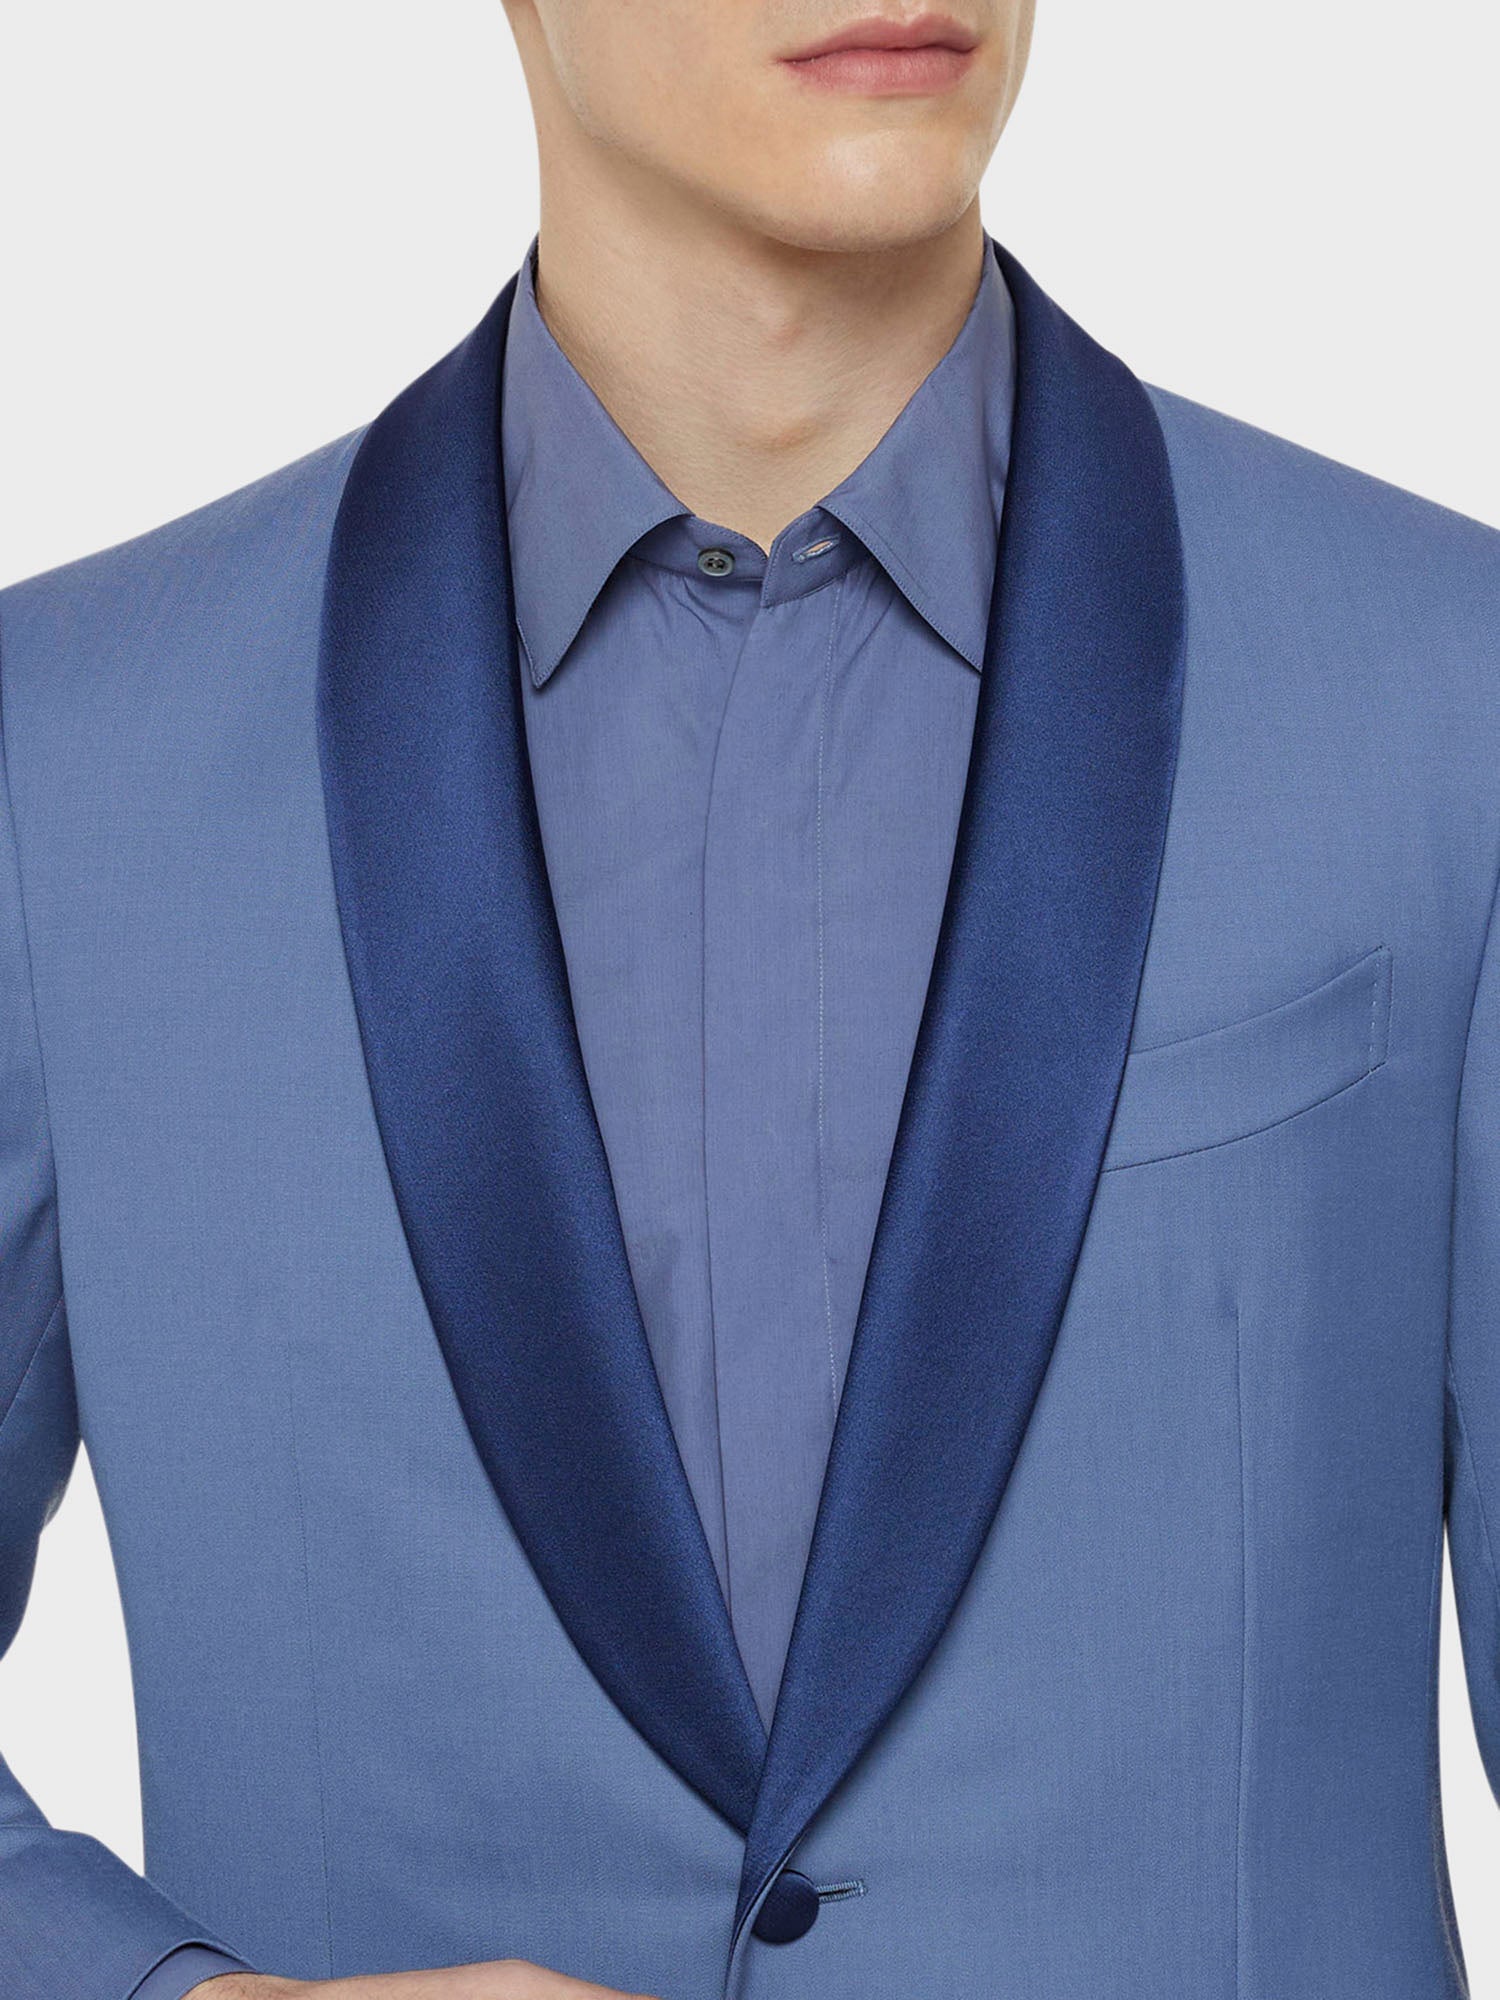 Caruso Menswear Abbigliamento Uomo Abito smoking manon in lana azzurro indossato giacca